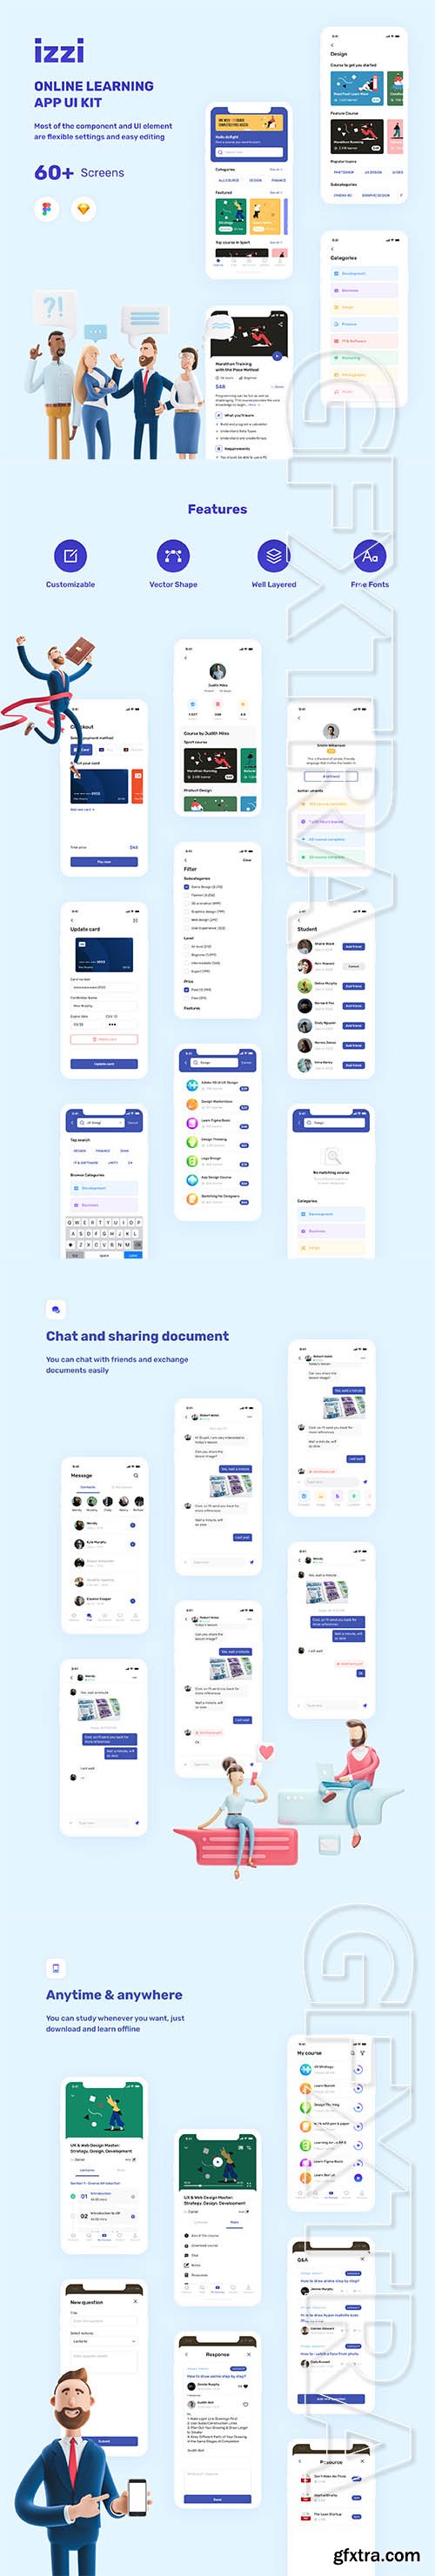 izzi - Online Learning App UI Kit